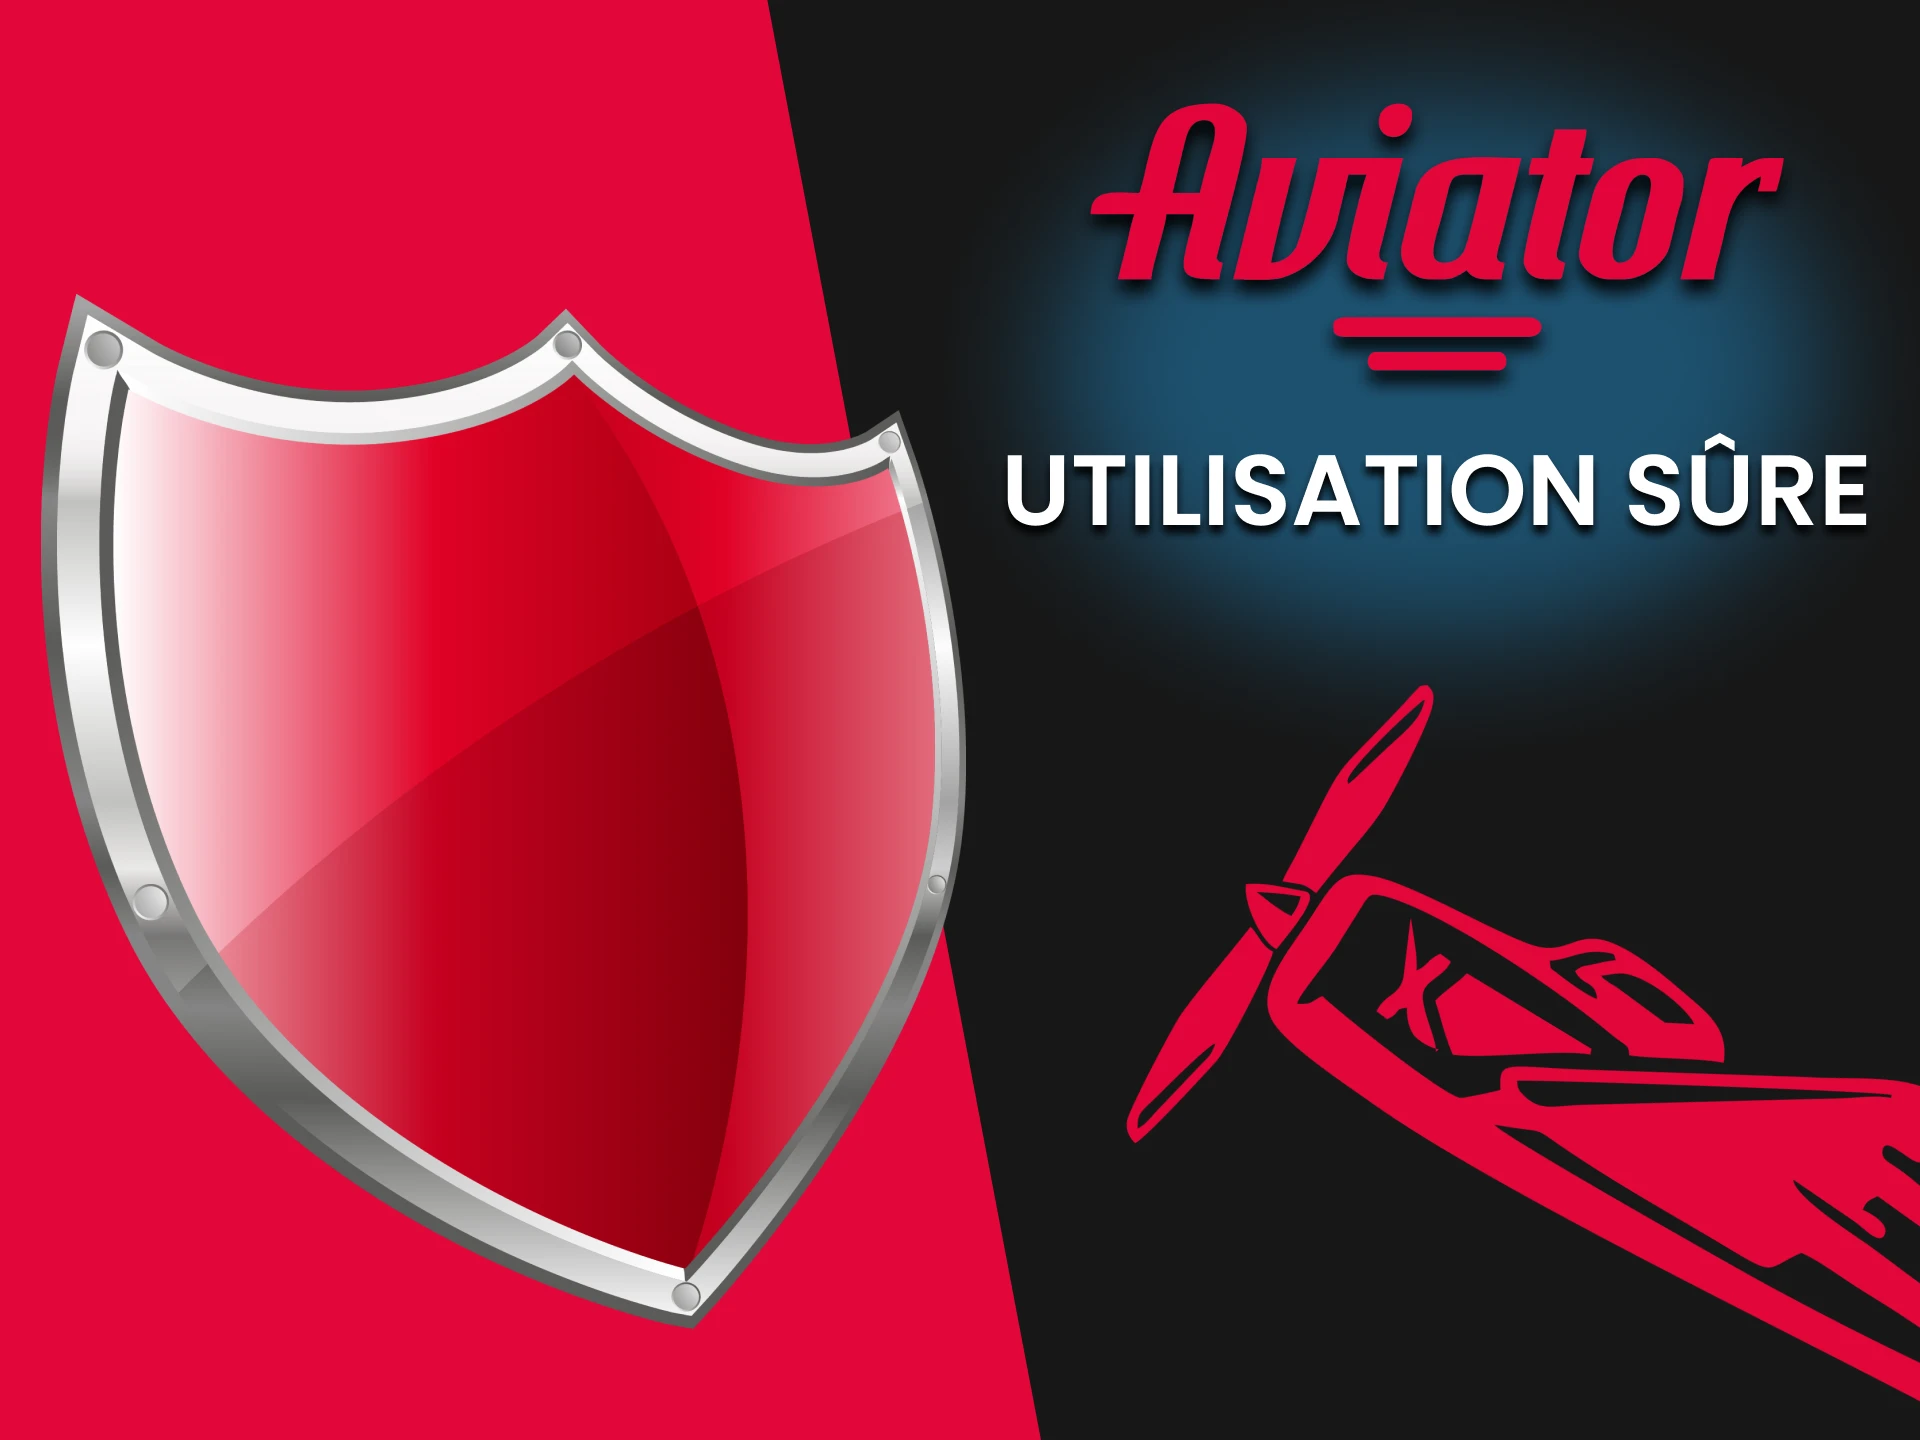 Nous parlerons de la sécurité de l'utilisation de Predictor for Aviator.